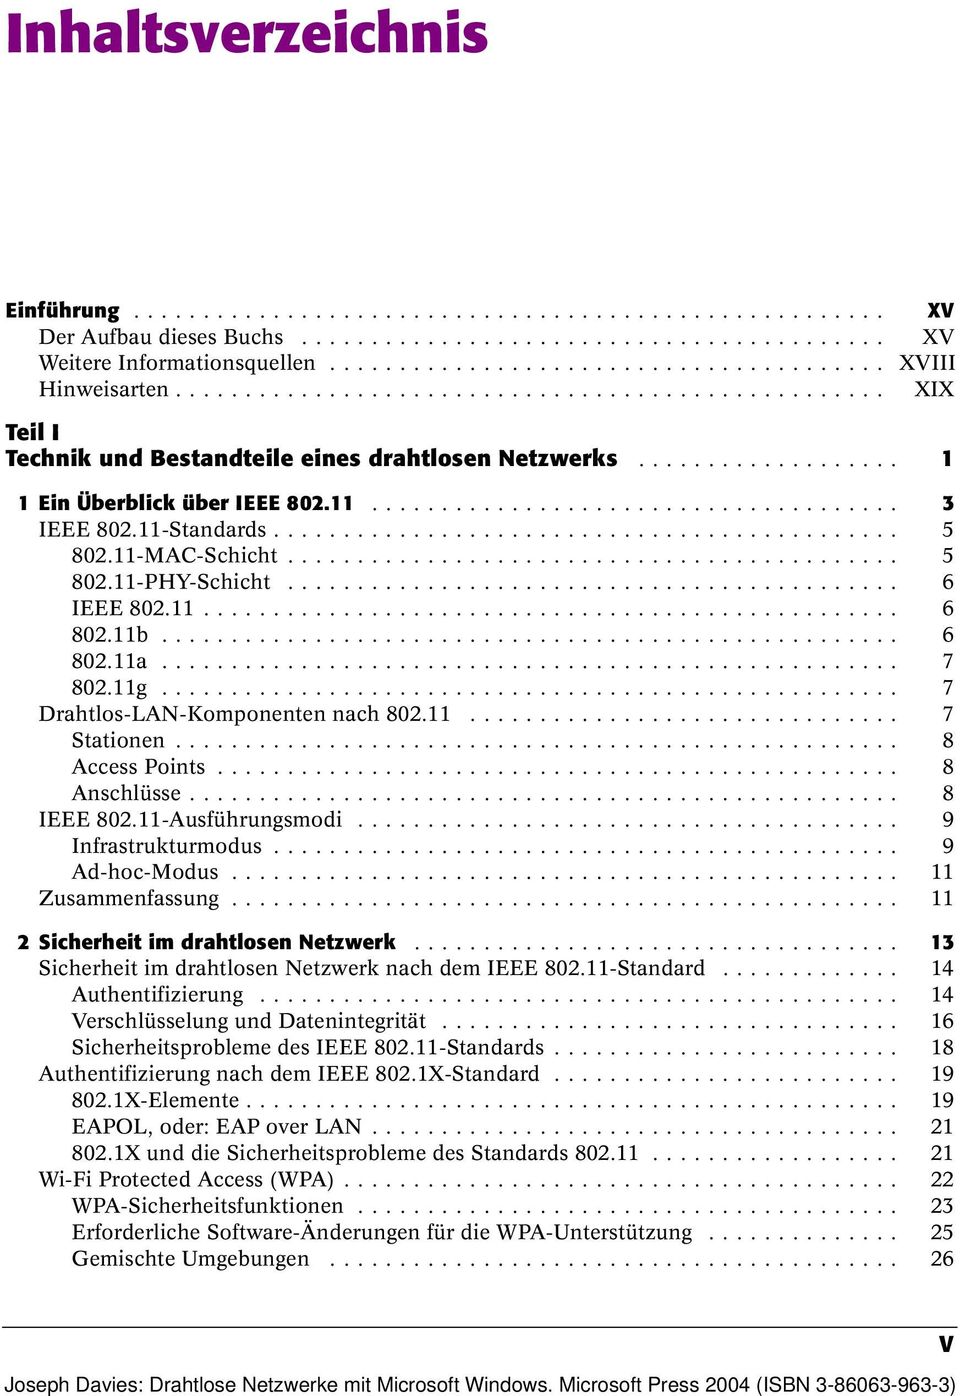 .. 8 Access Points... 8 Anschlüsse... 8 IEEE 802.11-Ausführungsmodi... 9 Infrastrukturmodus... 9 Ad-hoc-Modus... 11 Zusammenfassung... 11 2 Sicherheit im drahtlosen Netzwerk.